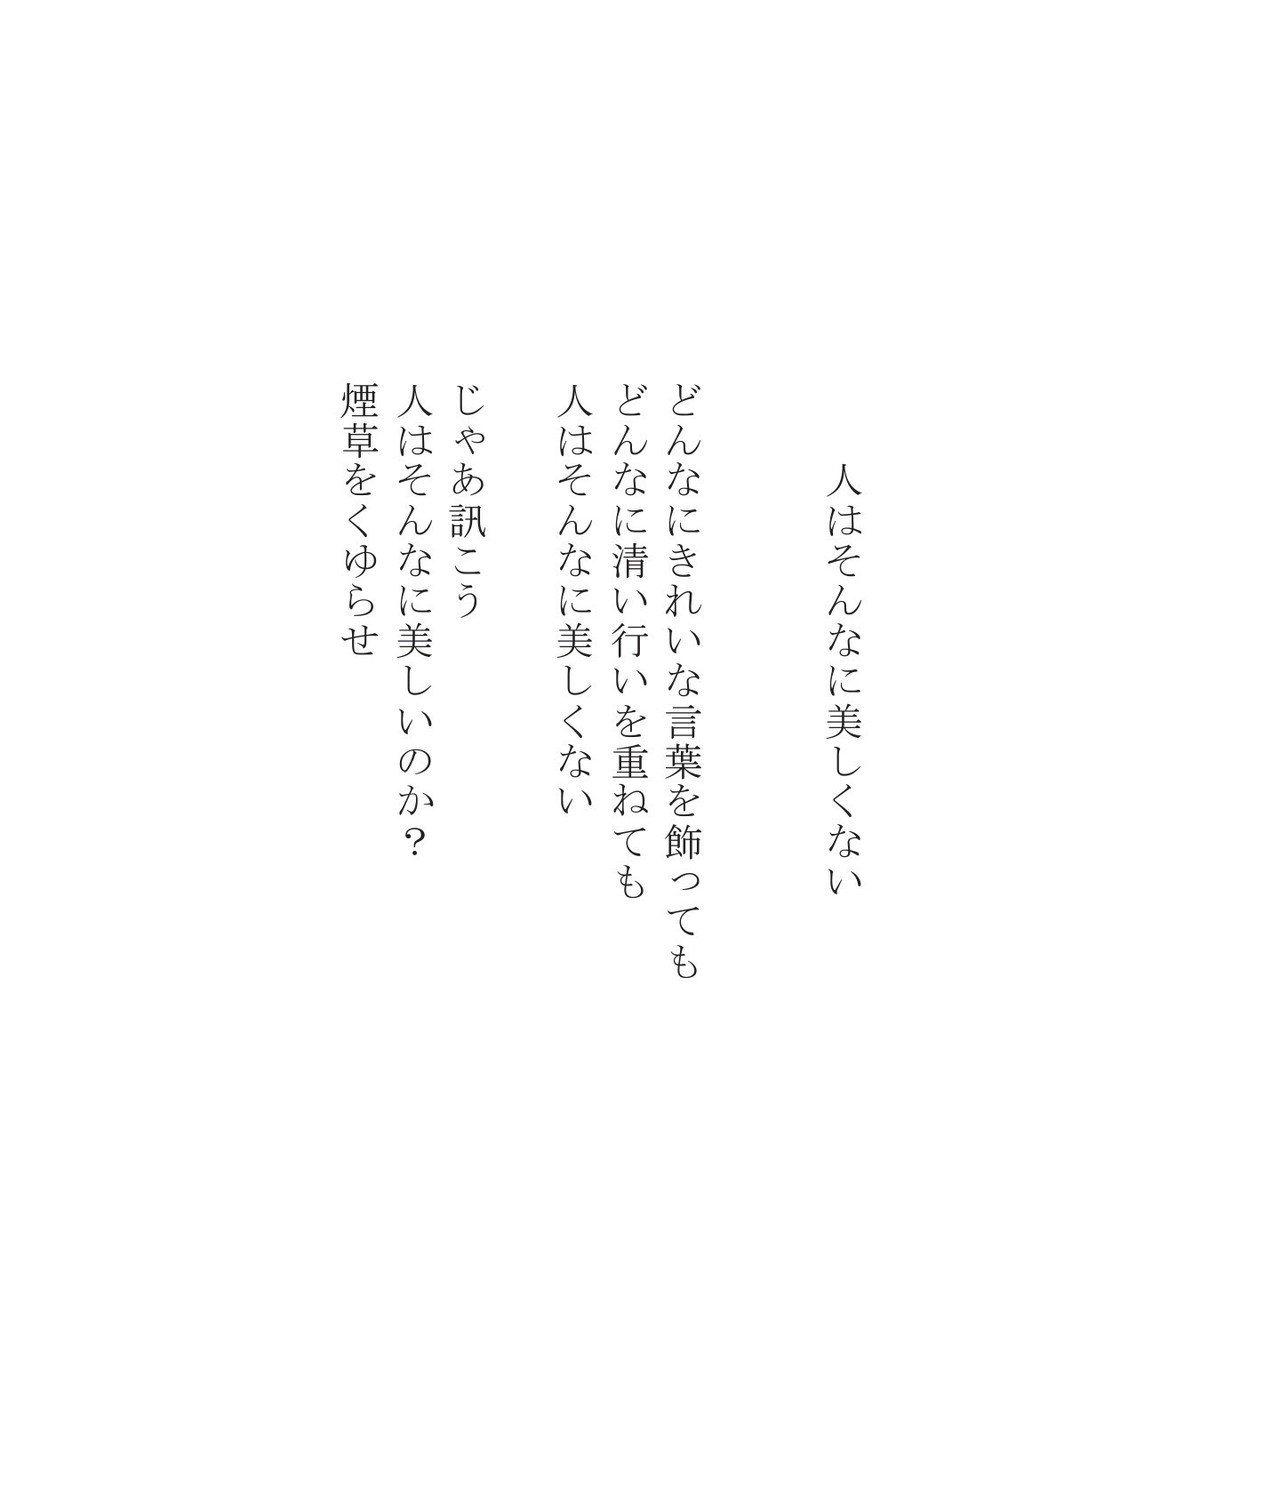 かつての詩93 人はそんなに美しくない Masanao Kata Note